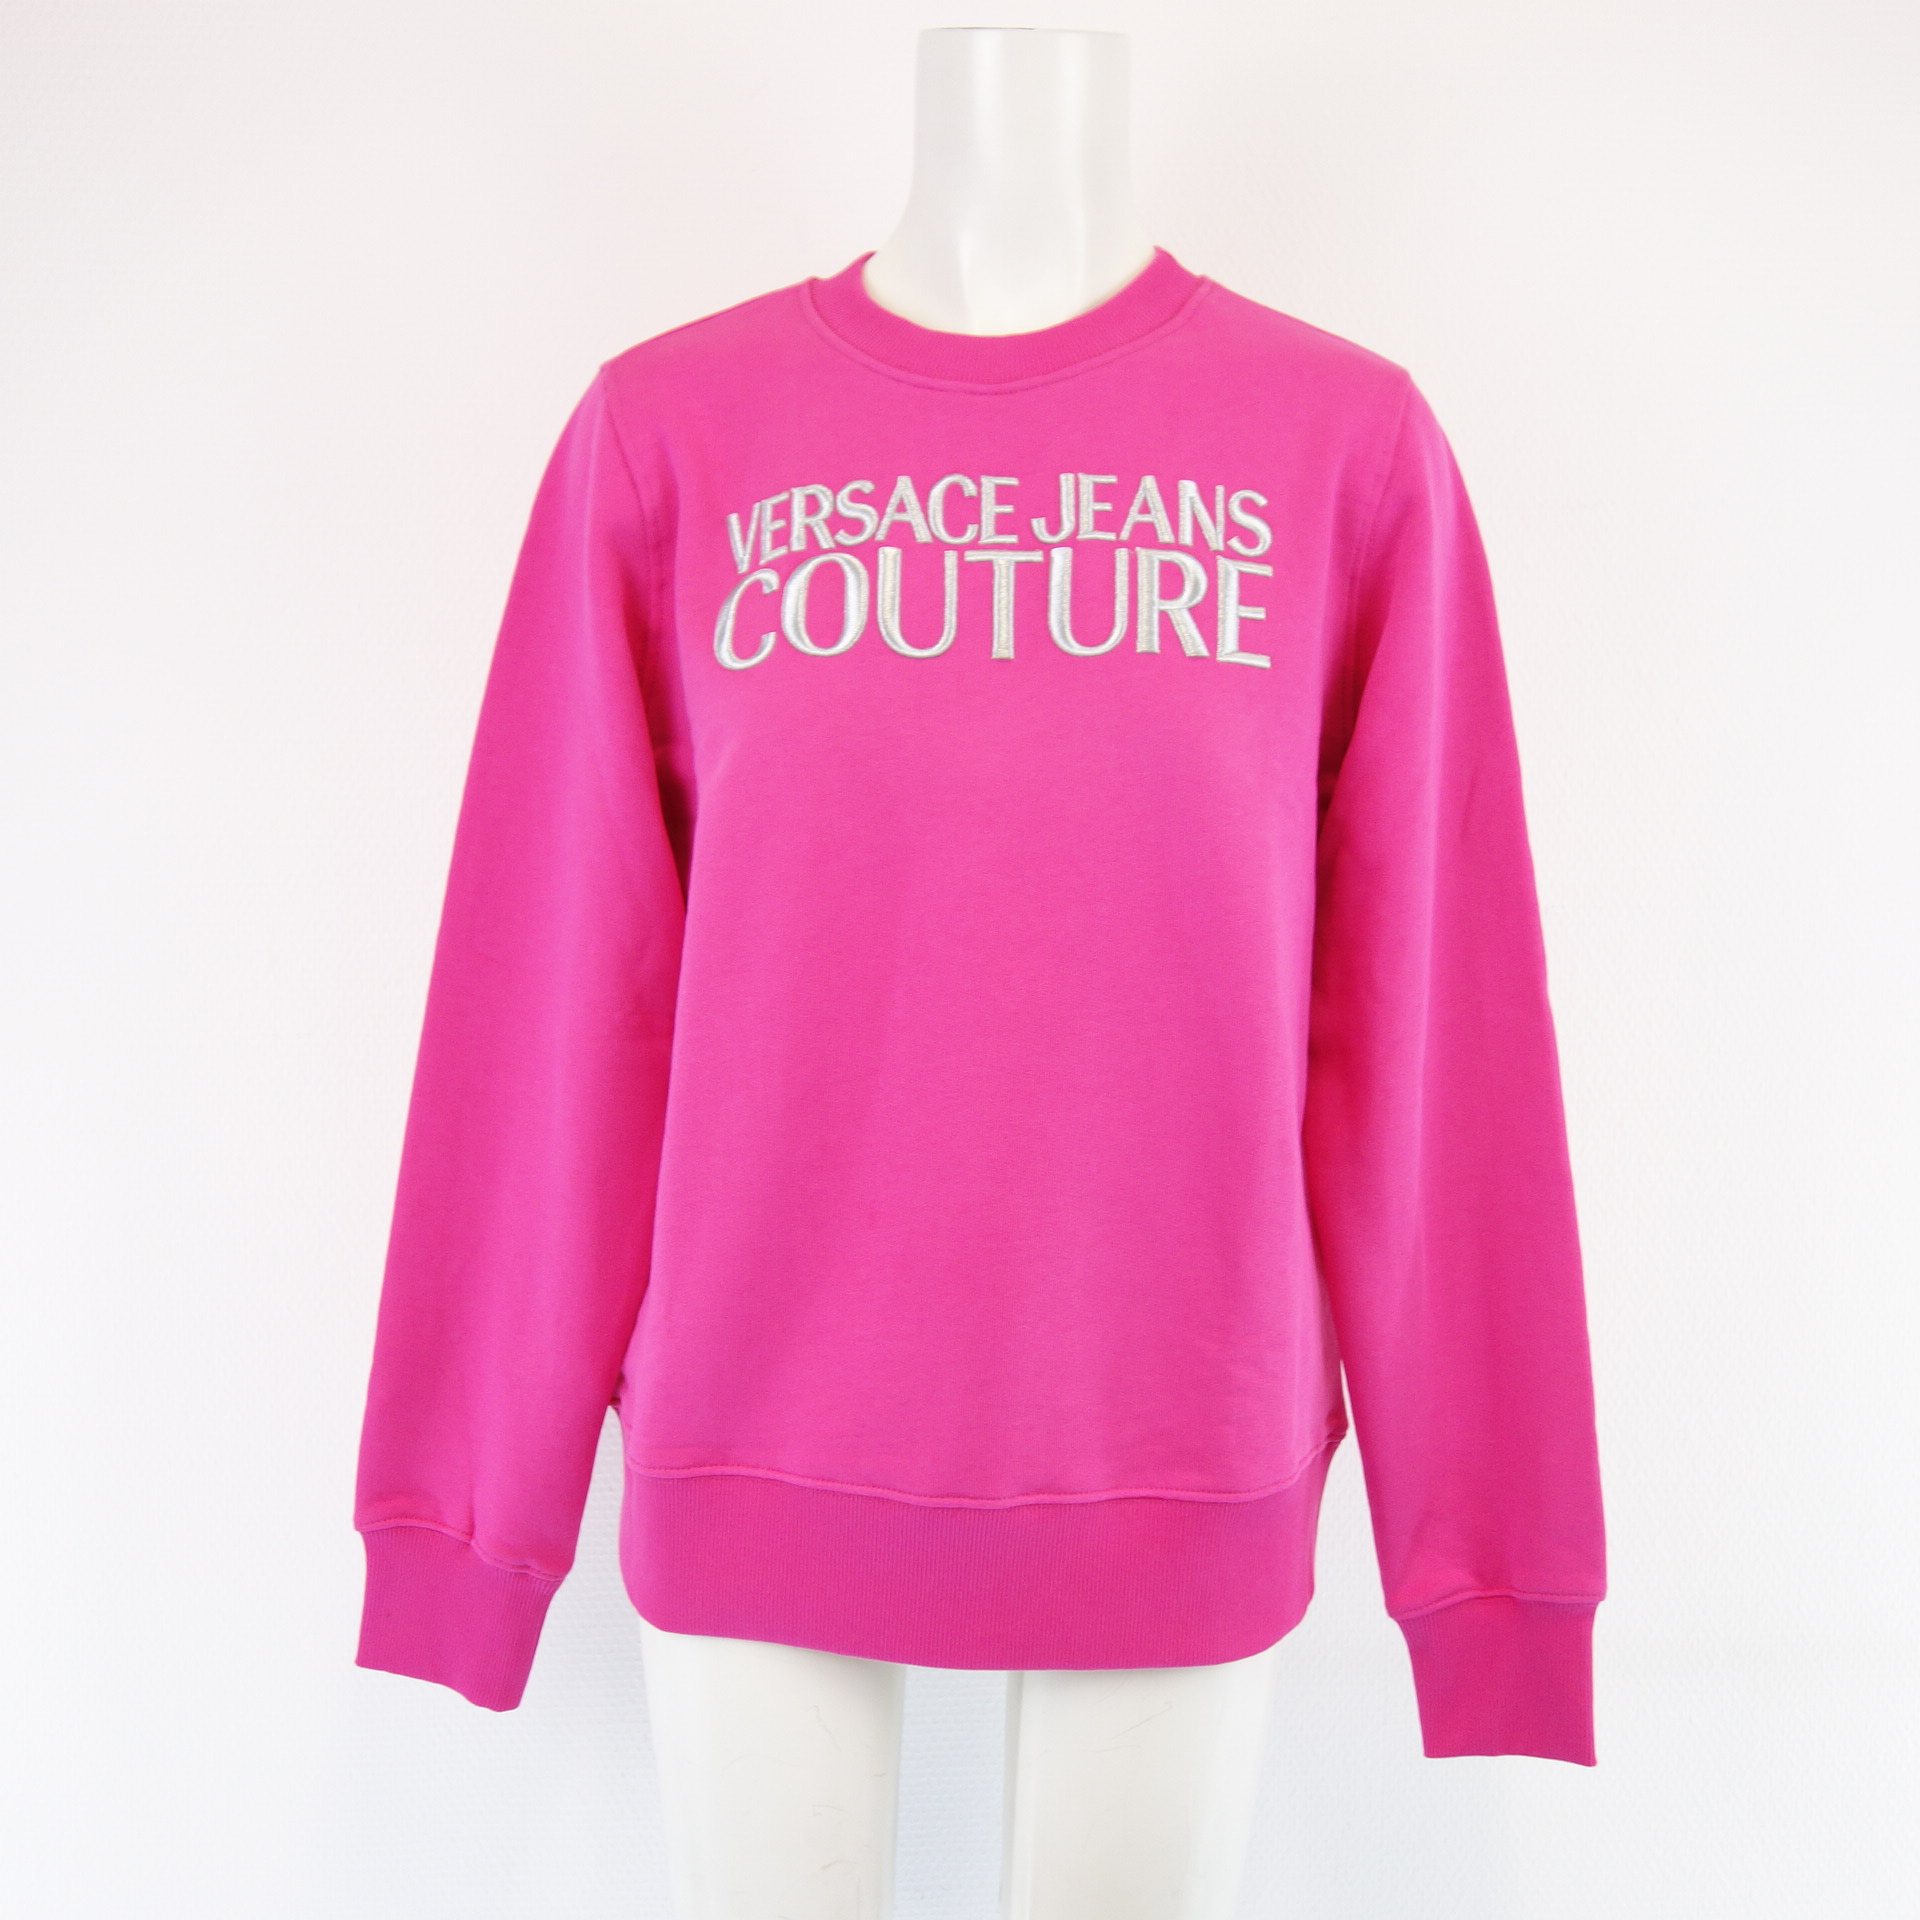 VERSACE JEANS COUTURE Damen Sweatshirt Sweater Pullover Sweat Shirt Damenshirt Pink 